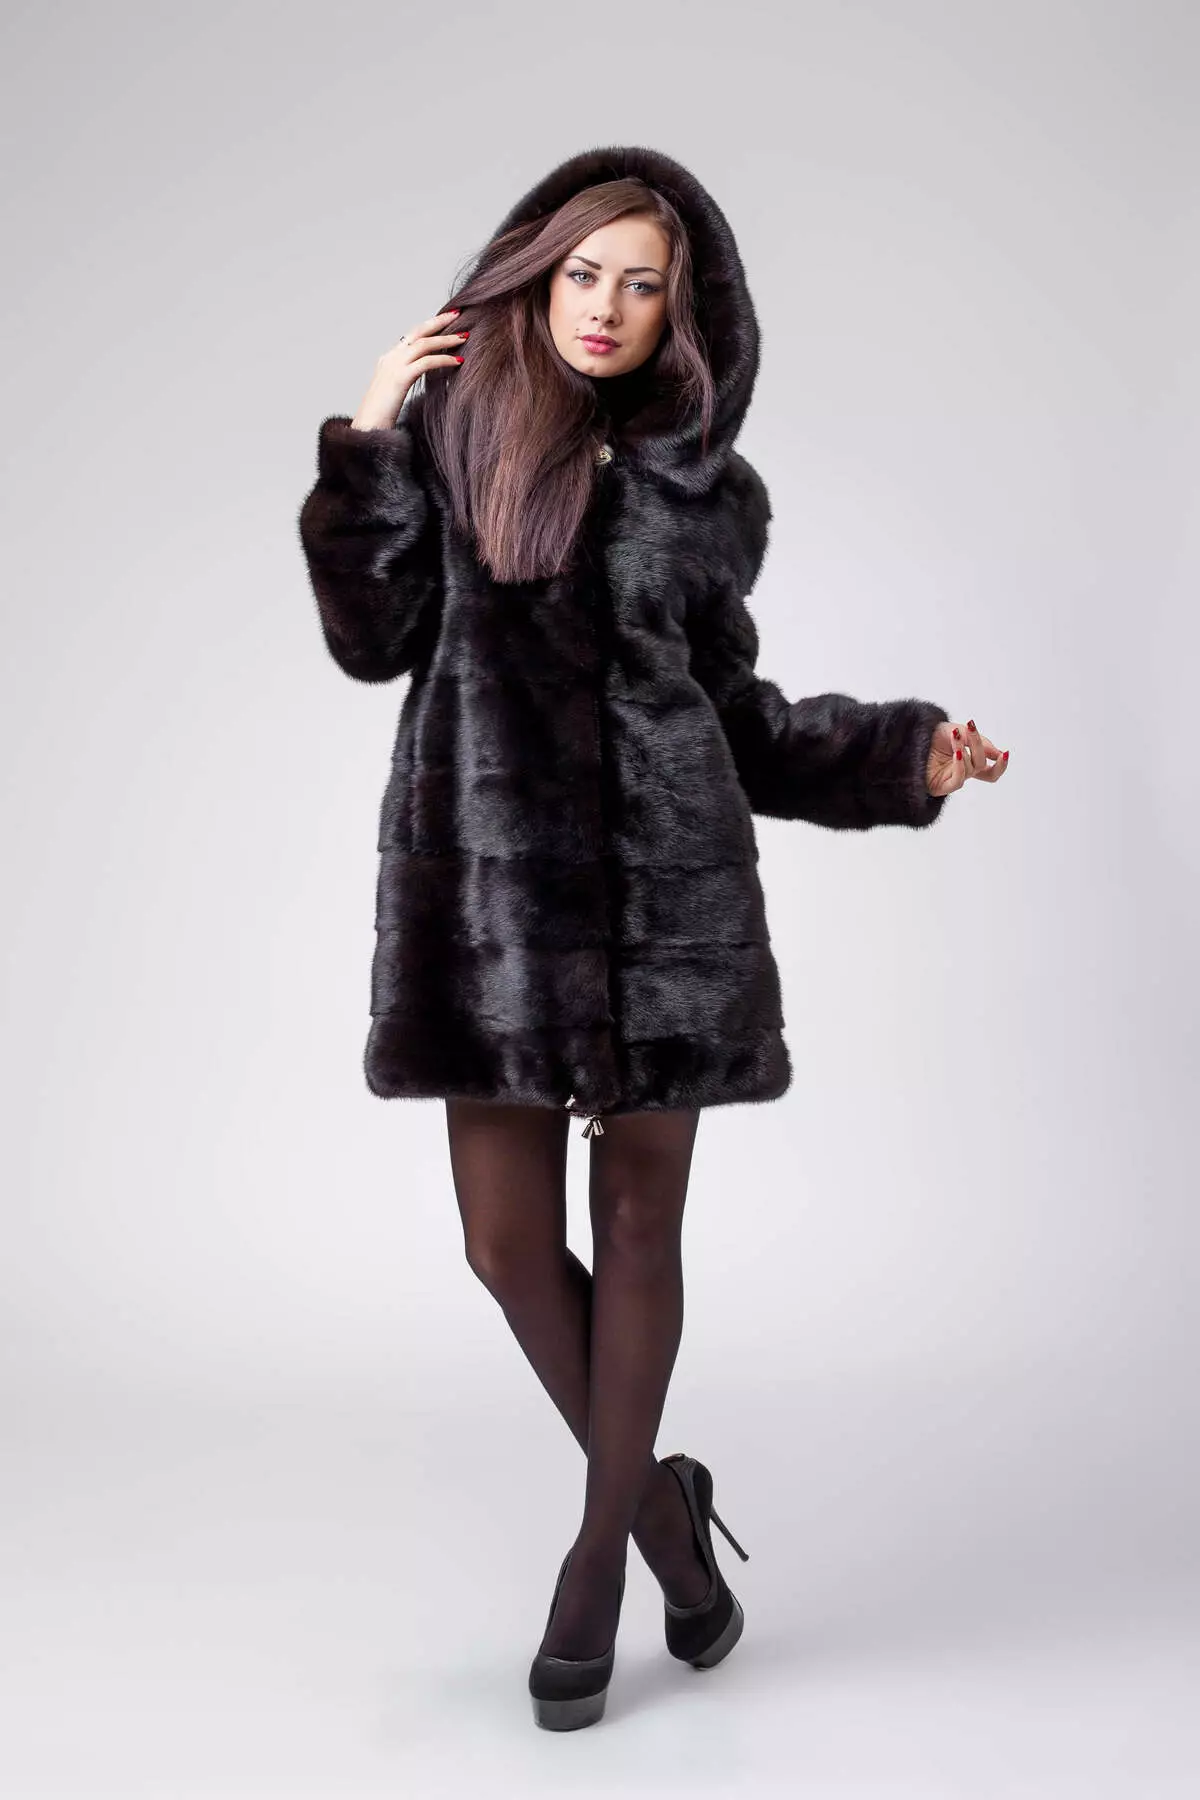 Τι να φορέσετε ένα παλτό γούνας (120 φωτογραφίες): Με ποιο καπάκι και τα παπούτσια φοριούνται, με τα οποία το γούνα είναι χωρίς ένα κολάρο, μαύρο, γκρι, με ένα μαντήλι, εικόνες με γούνα 768_83